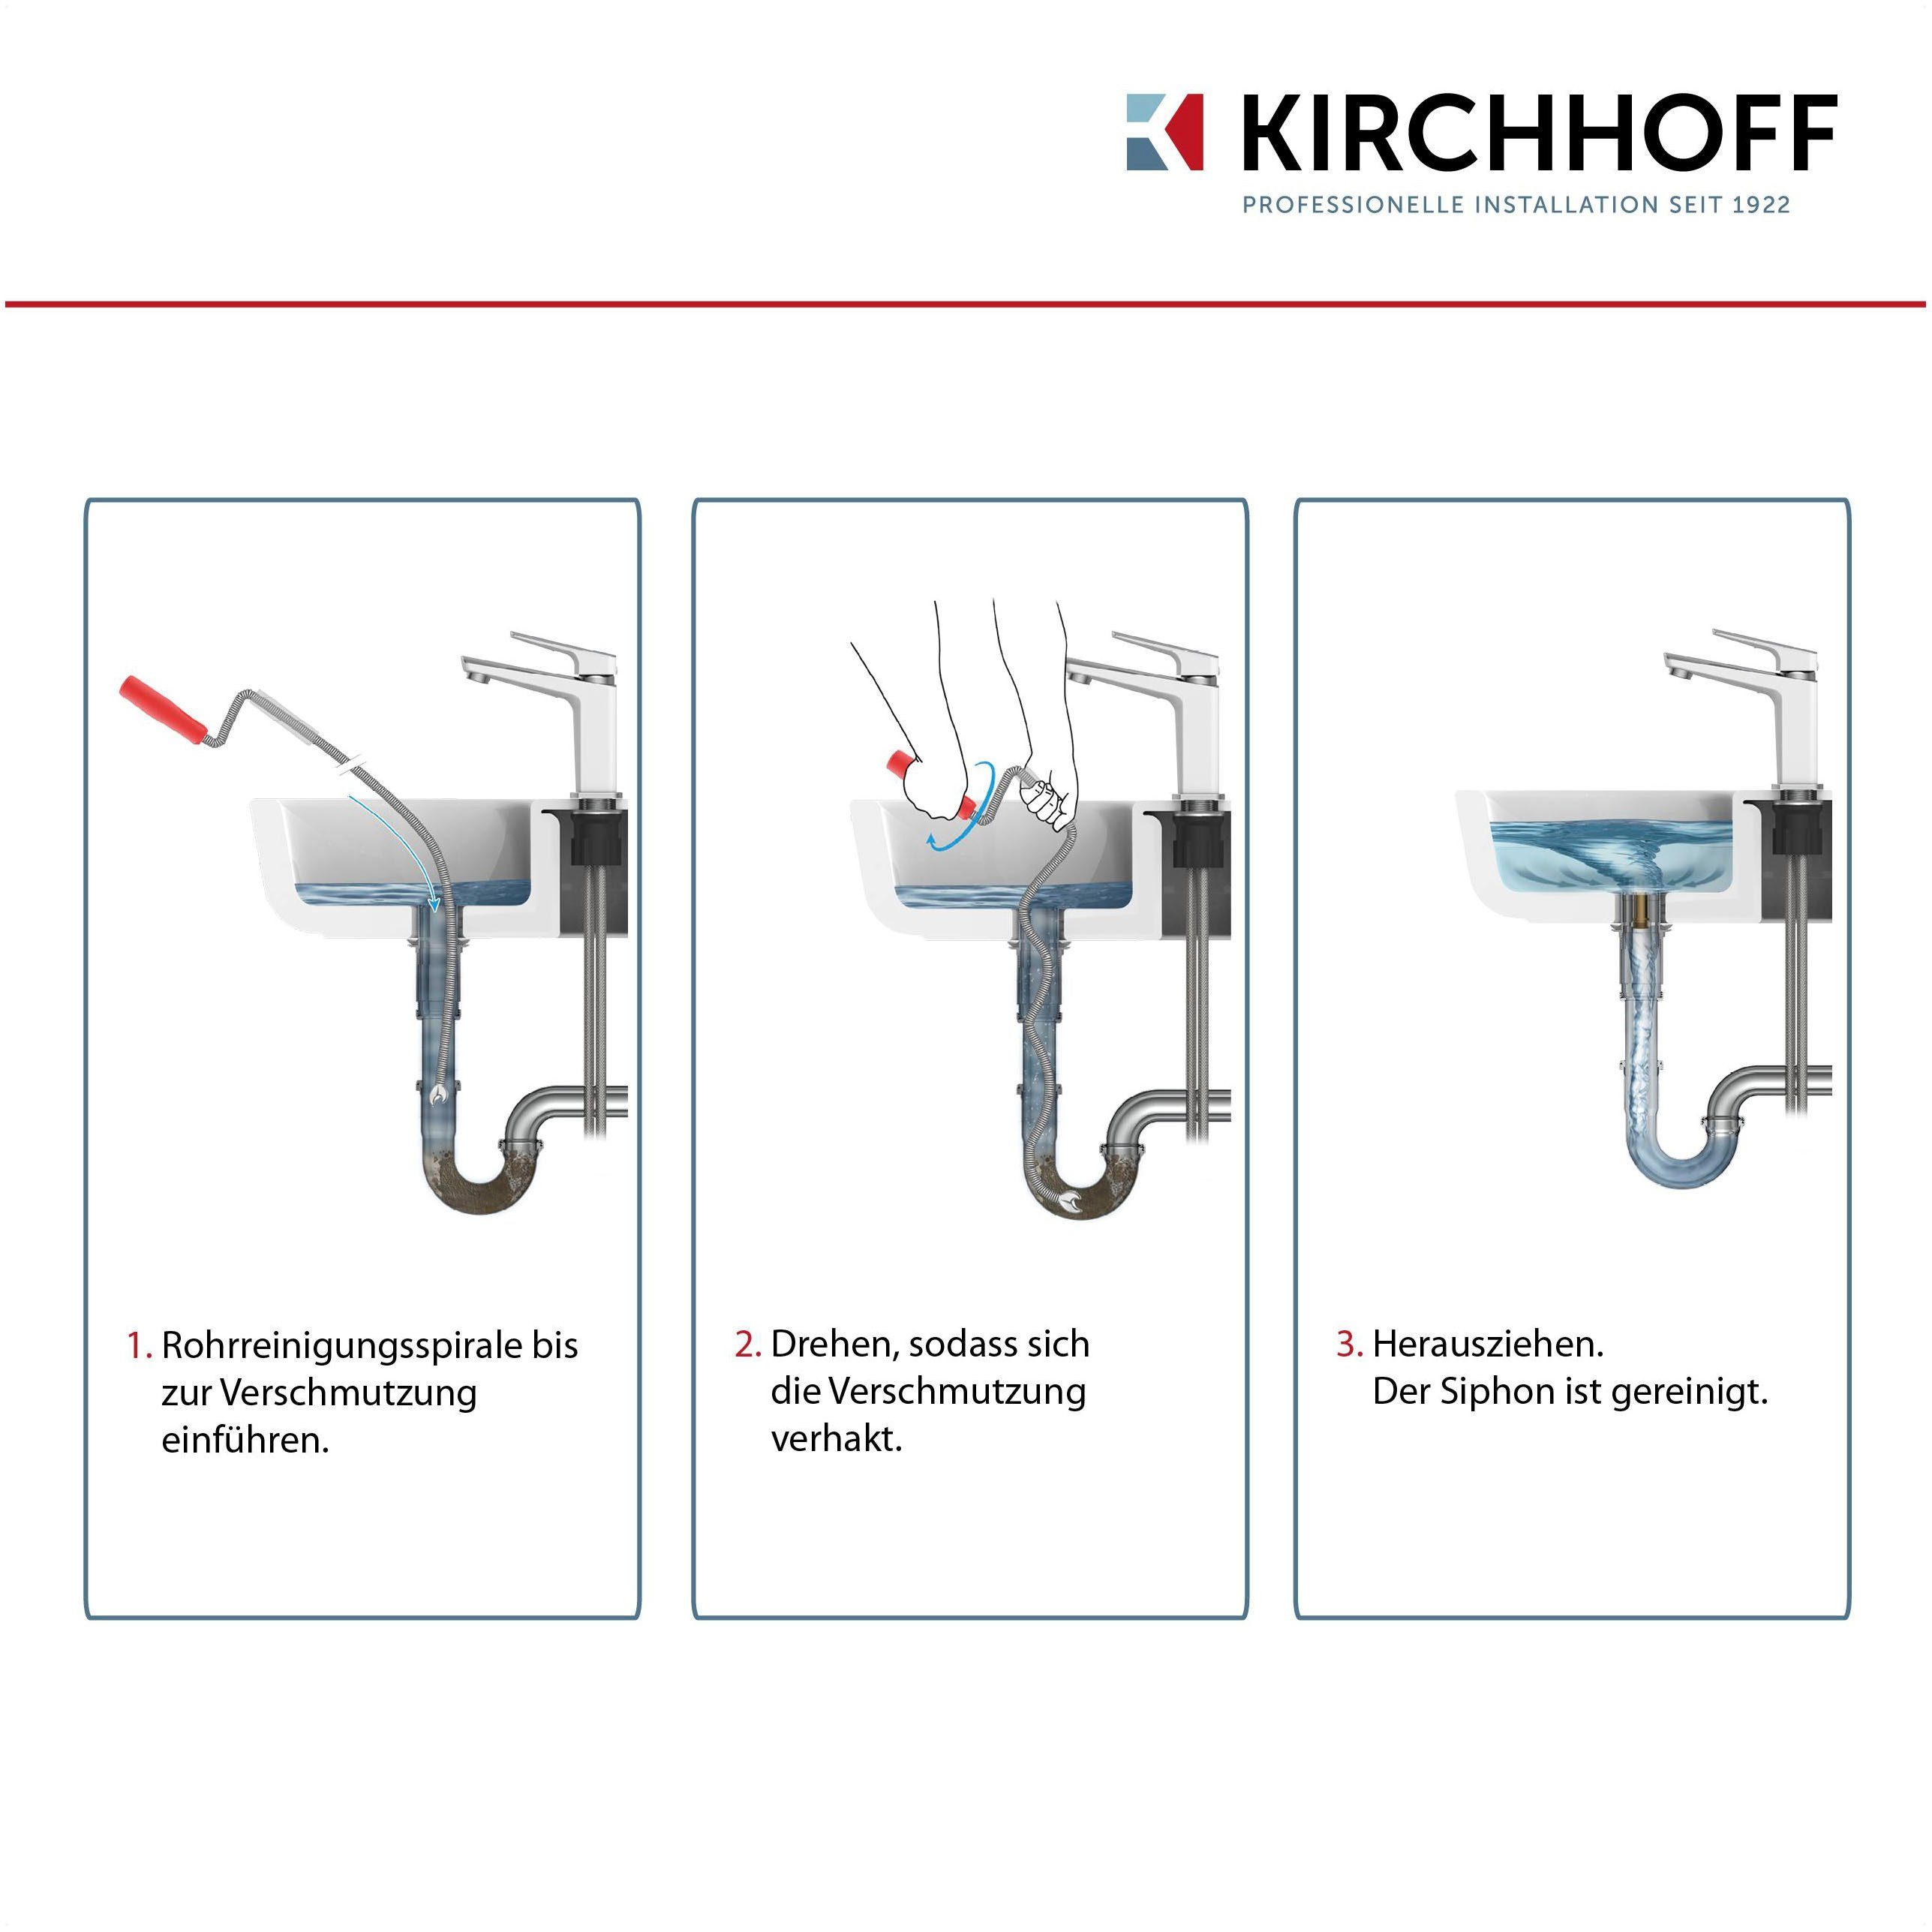 5 9 Kirchhoff umweltfreundliche mm für eine Rohrreinigungsspirale, m, Reinigung Abflussspirale x